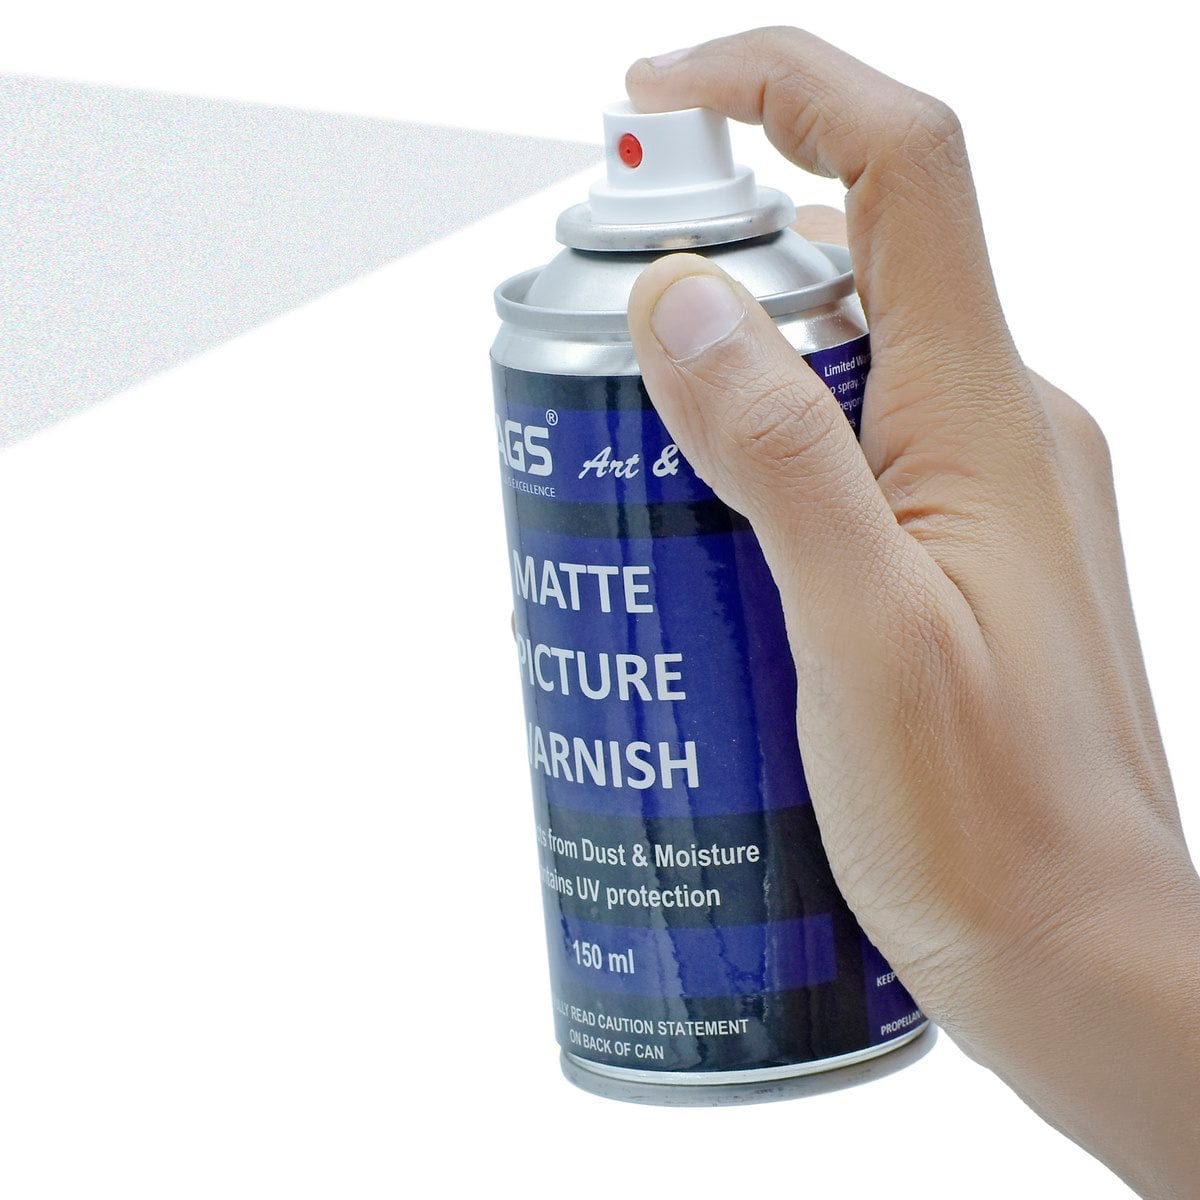 jags-mumbai Spray Paint Jags Spray Picture Varnish Matt 150ML JSPV02